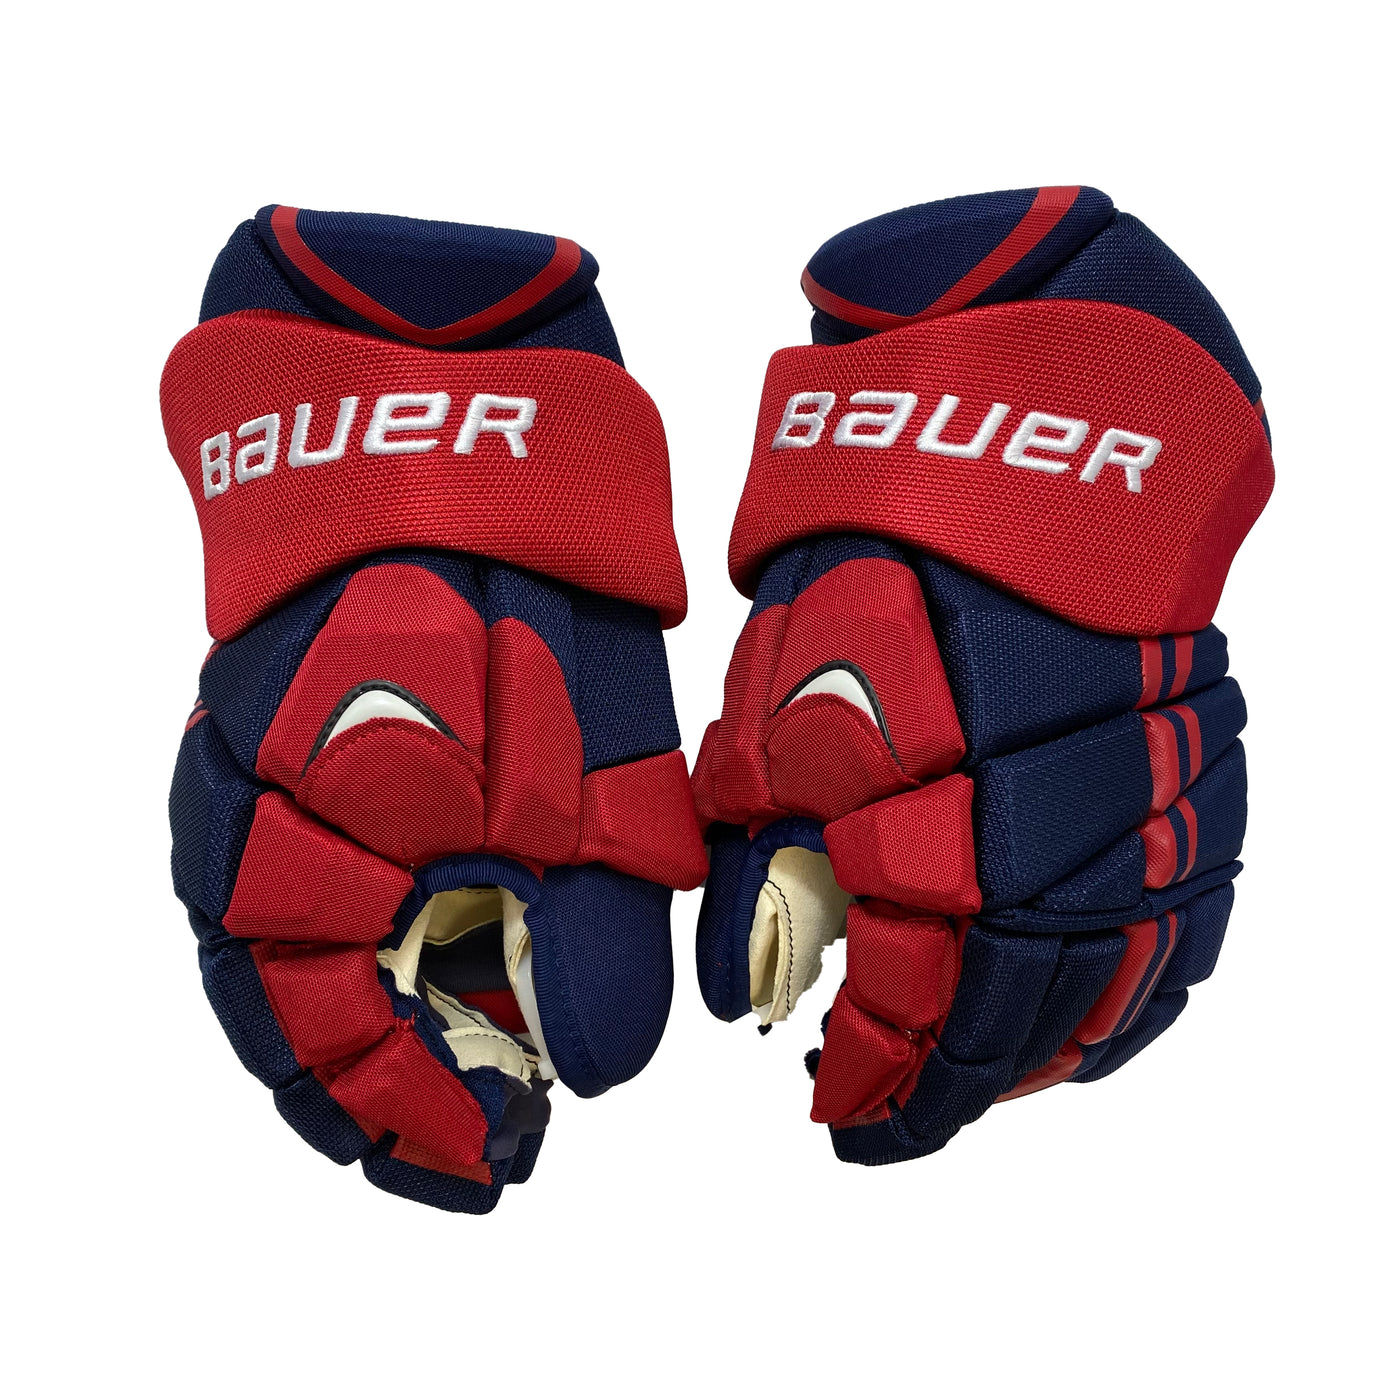 Bauer Vapor APX2 Pro - IIHF Team USA Worlds - Pro Stock Gloves - Team Issue